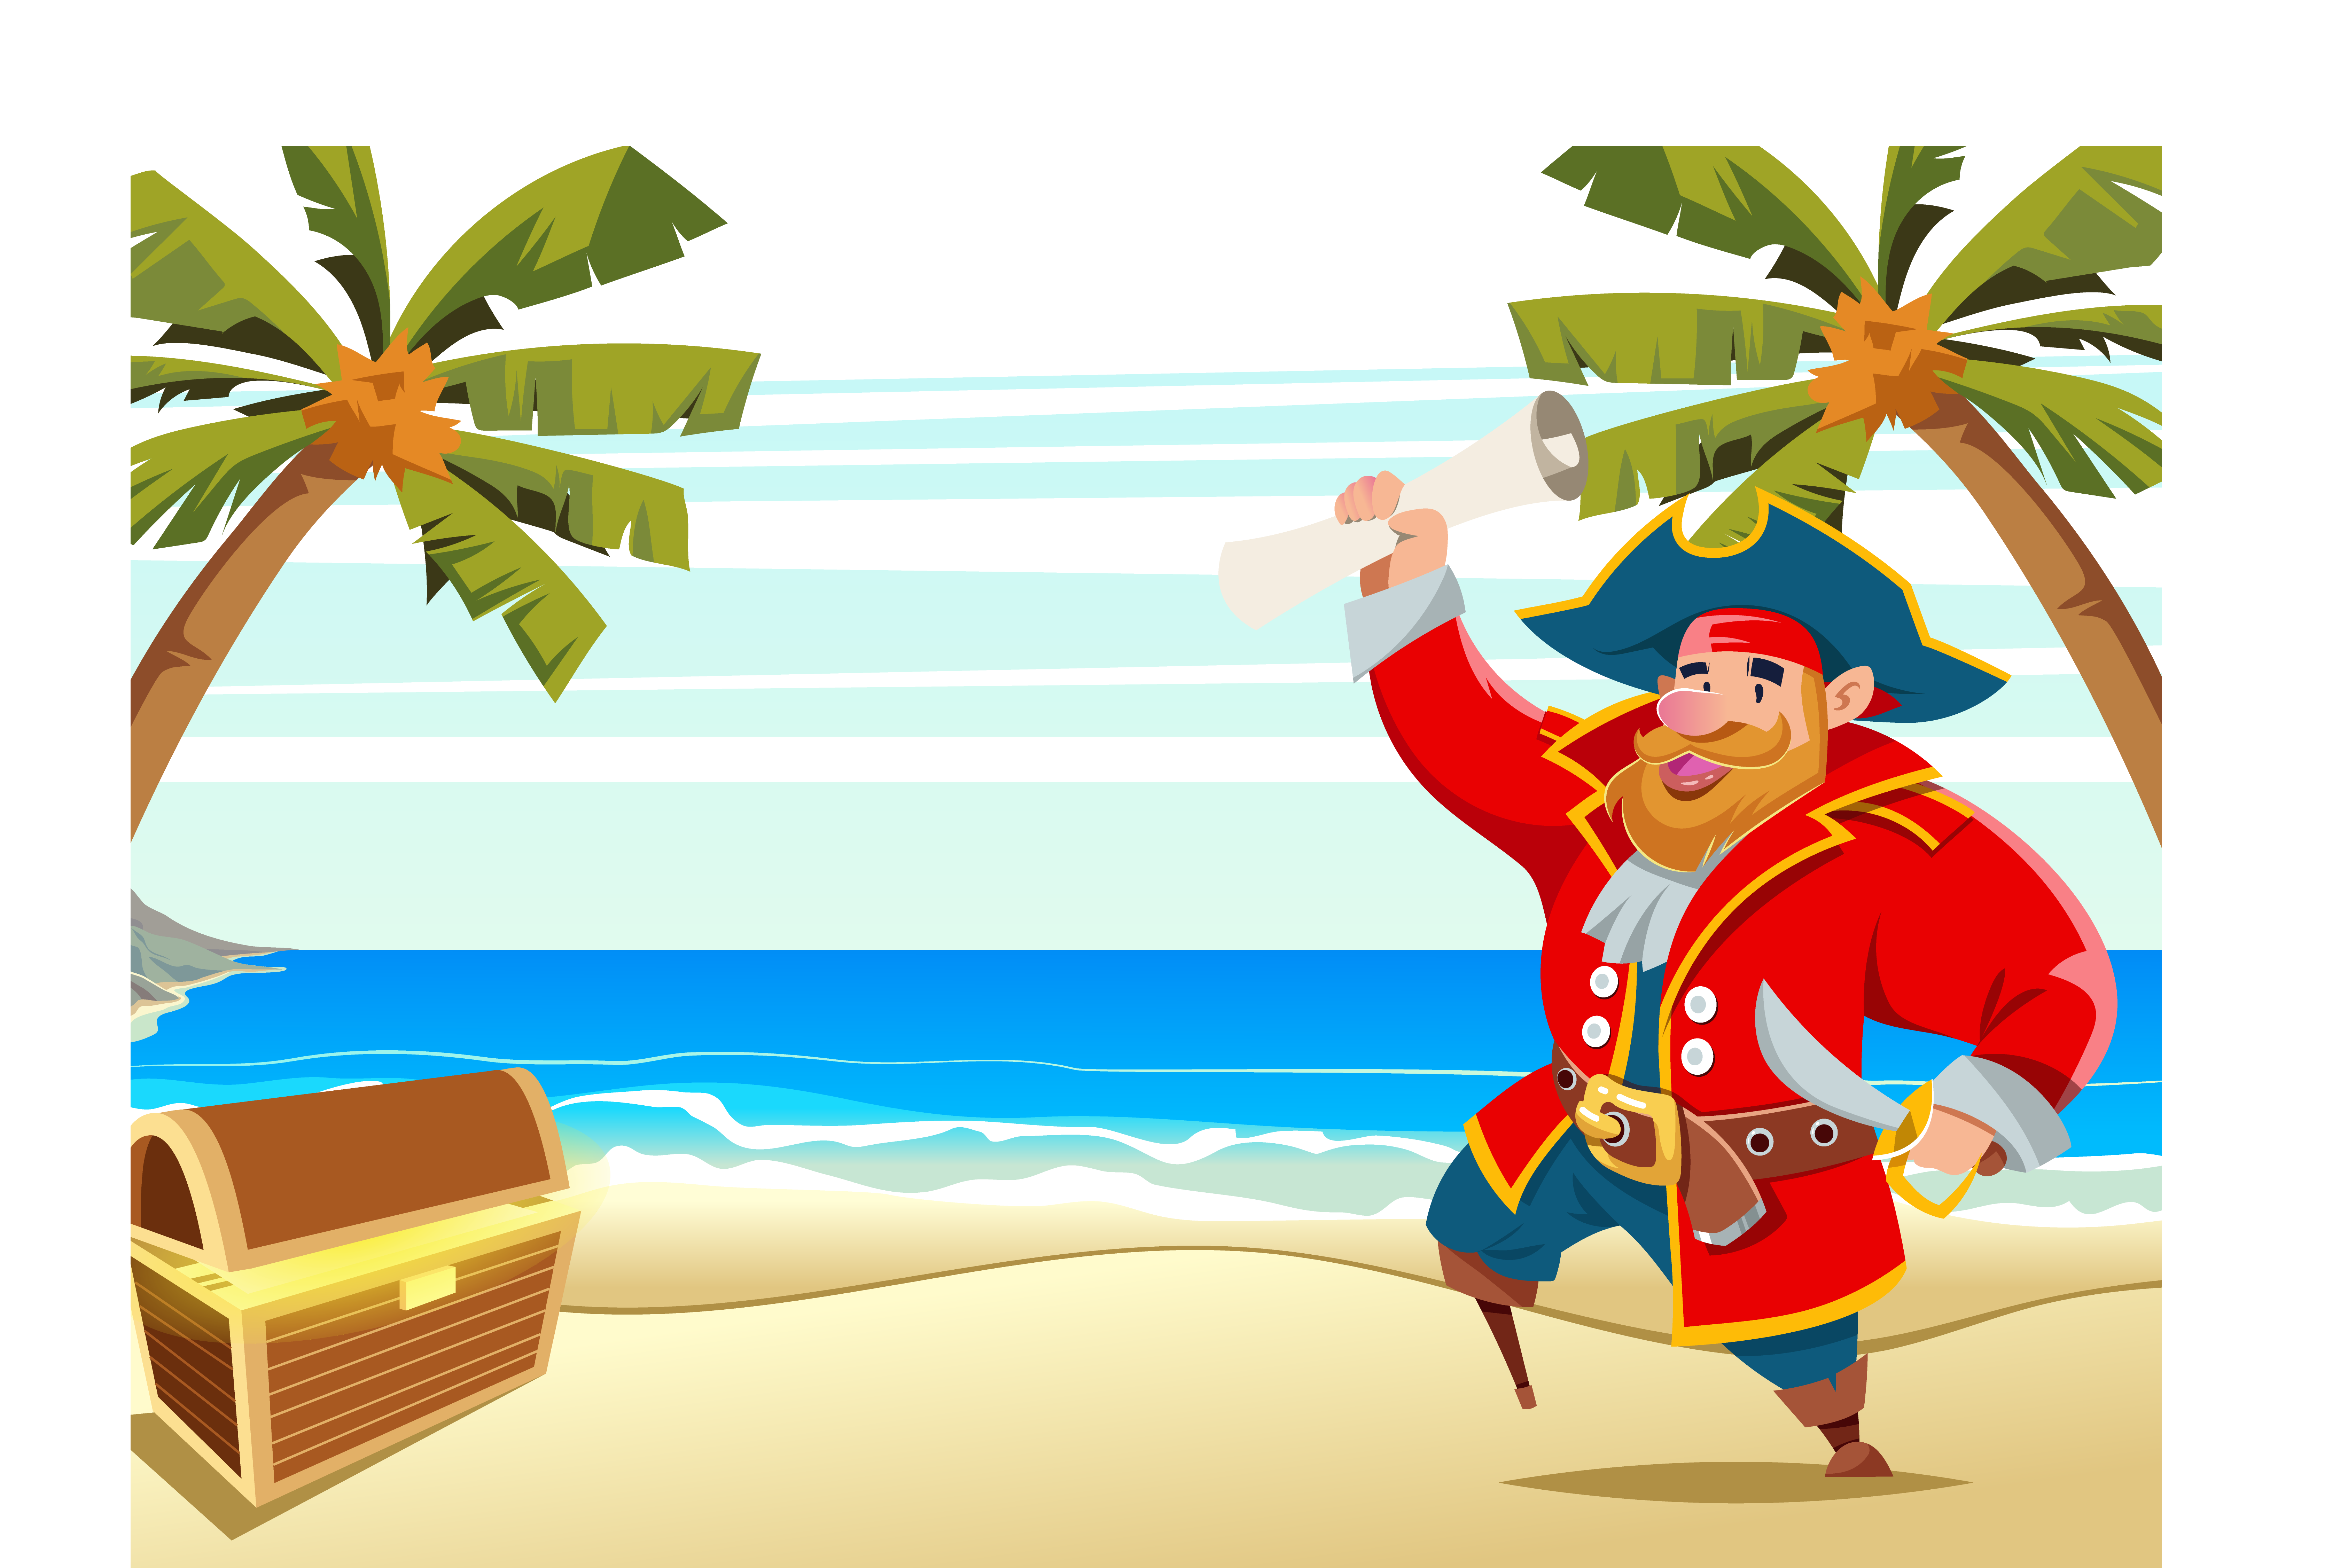 palm clipart pirate